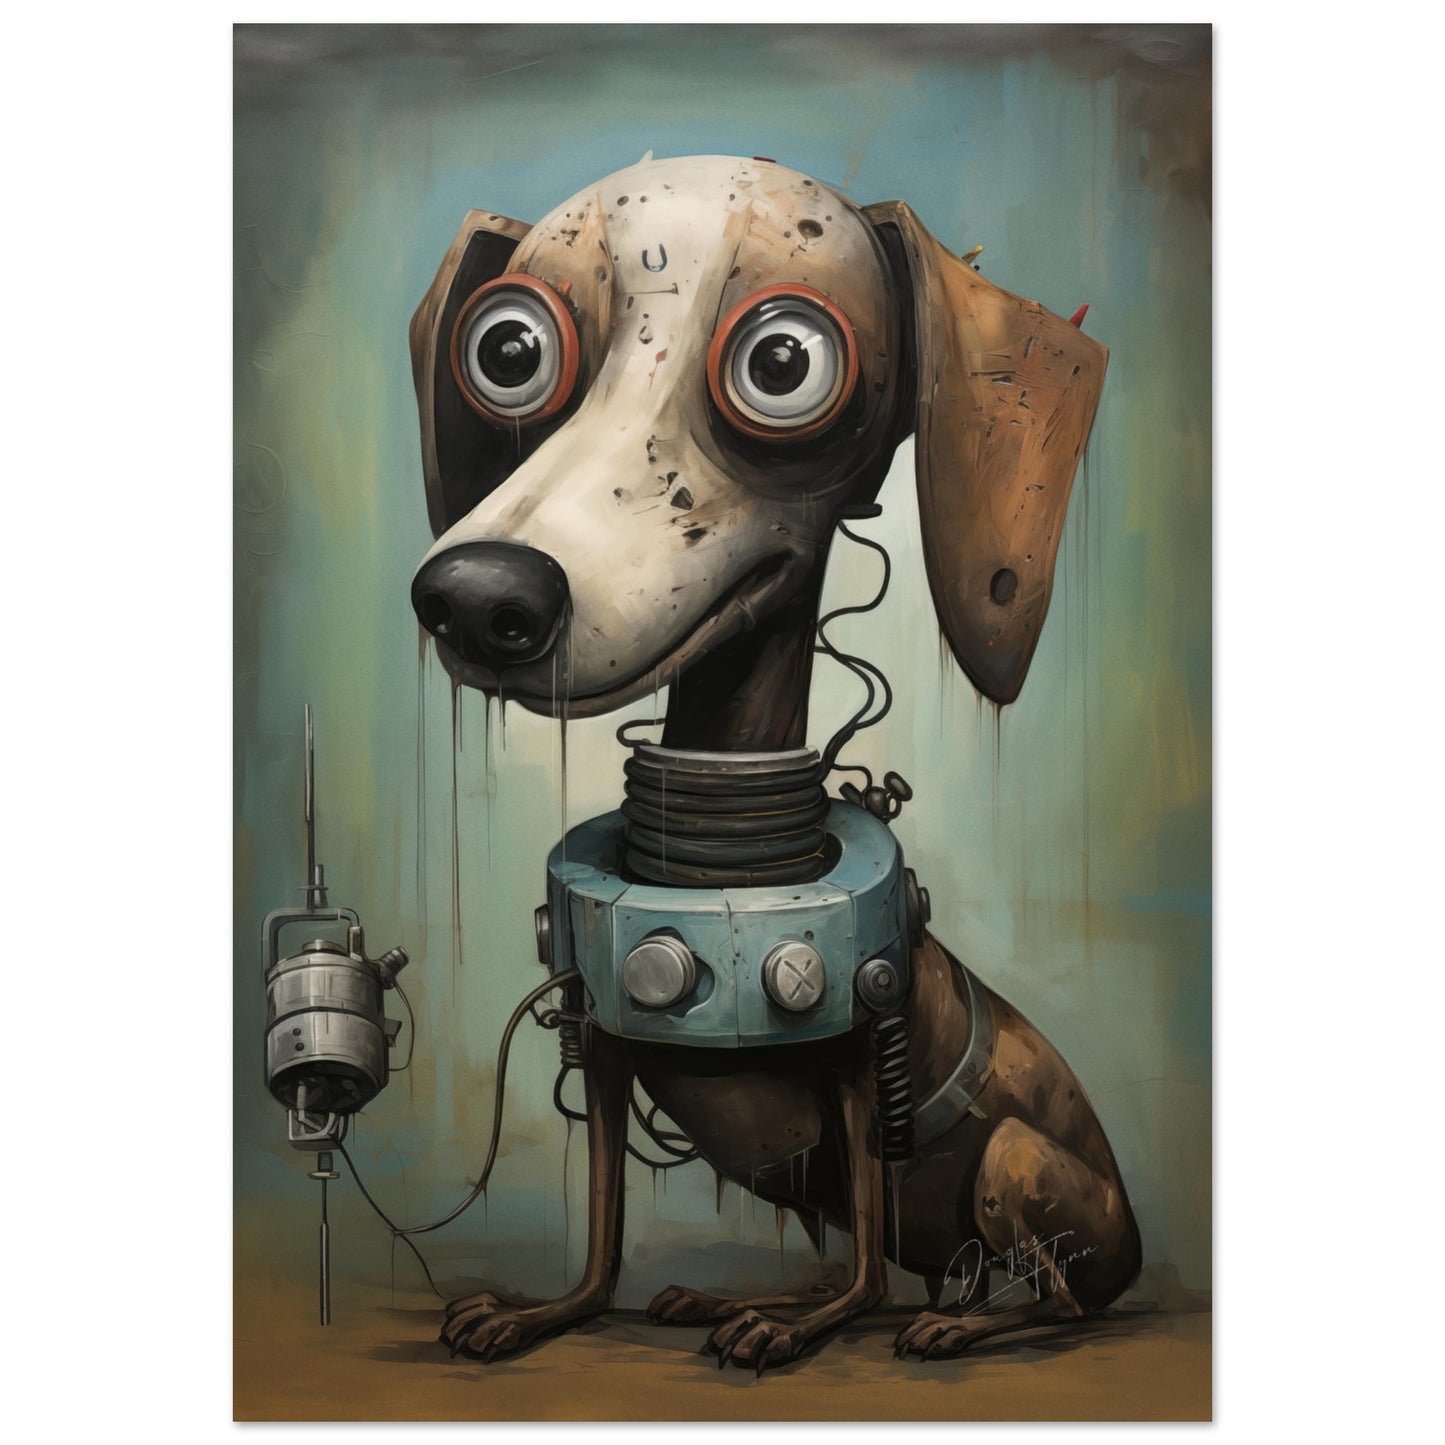 »Pet Robot Dog 03«